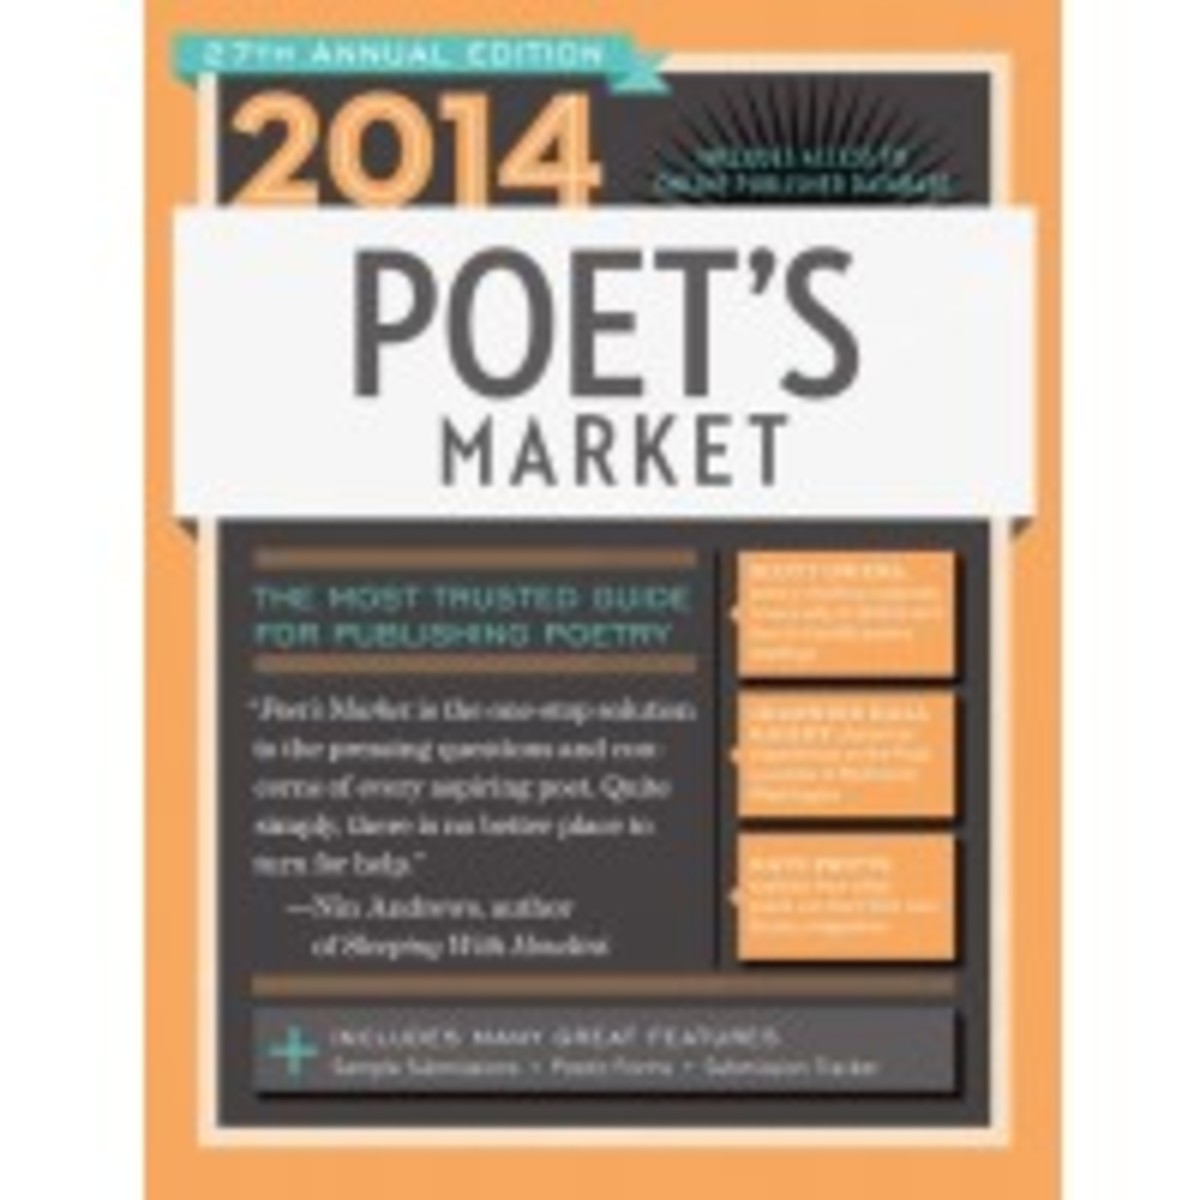 2014_poets_market